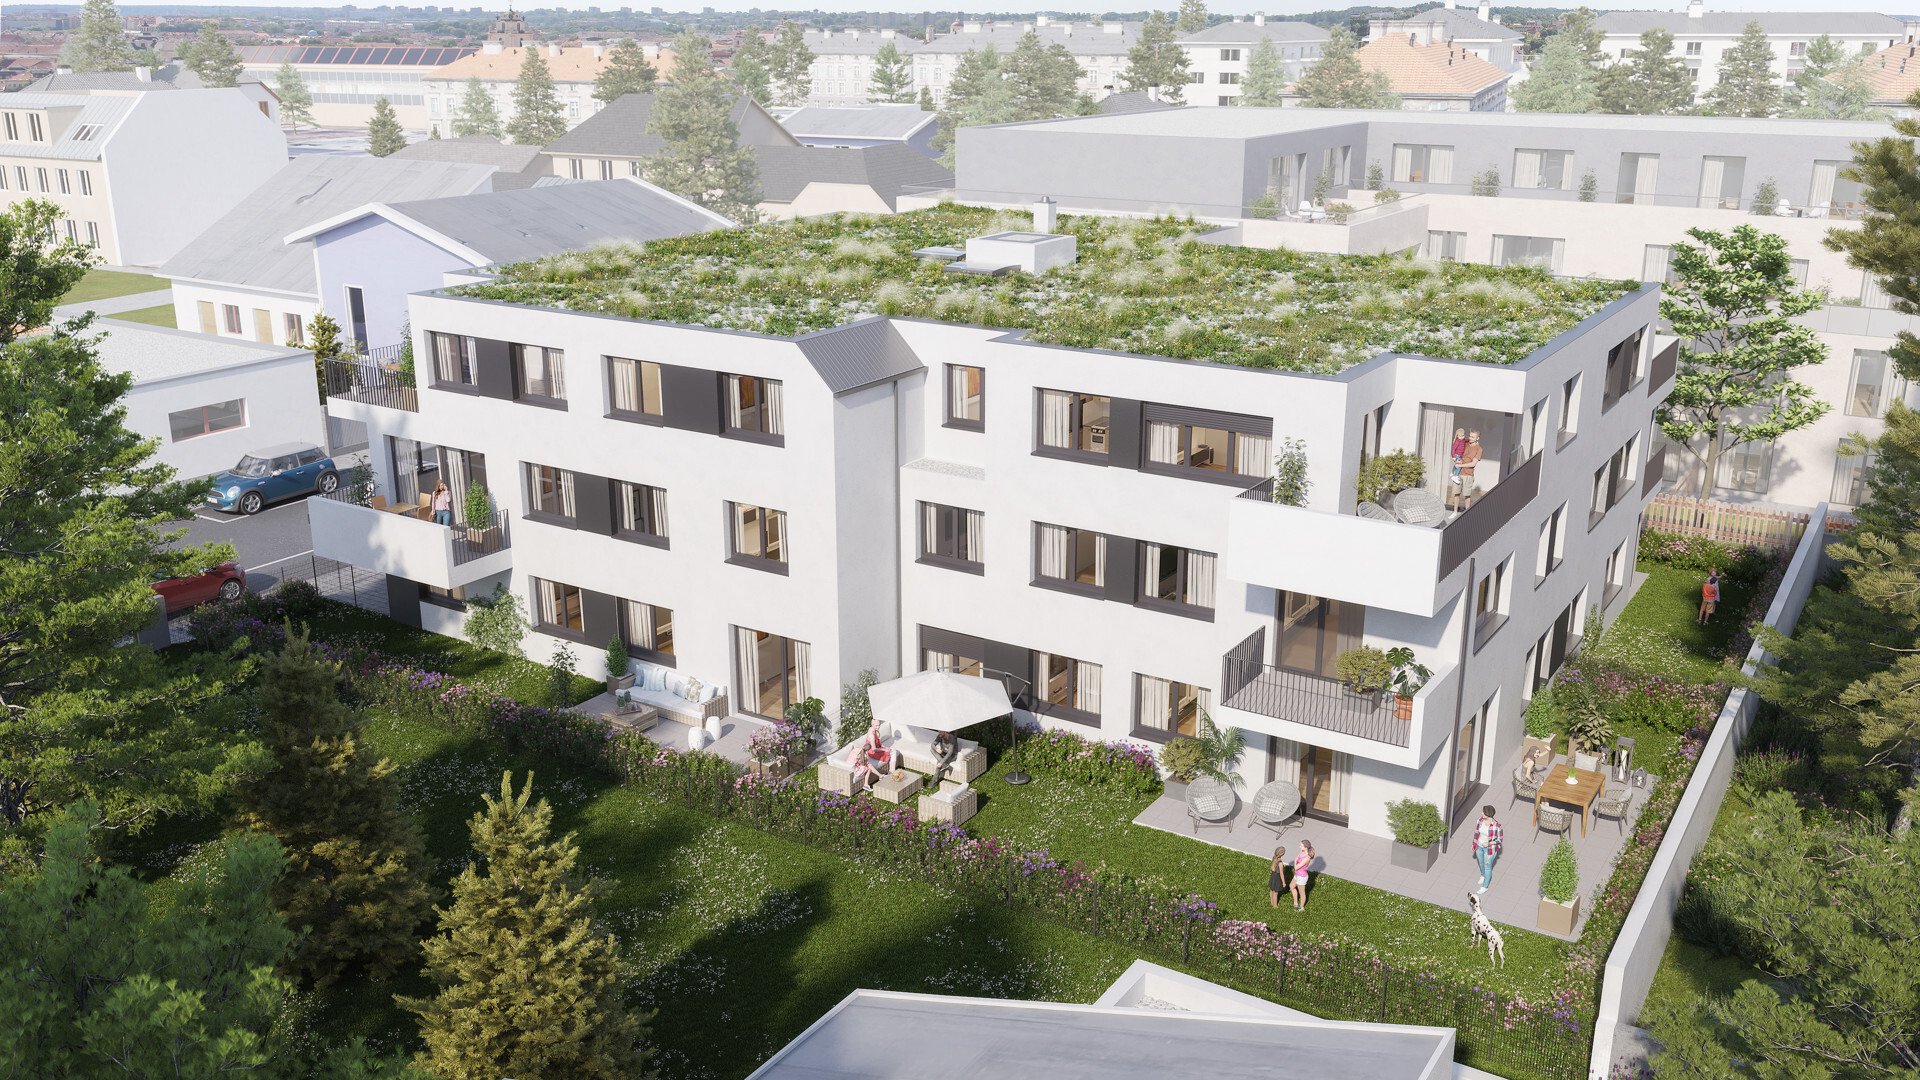 Baubewilligtes Bauträger-Grundstück in top Lage in Schwechat - zu kaufen in 2320 Schwechat